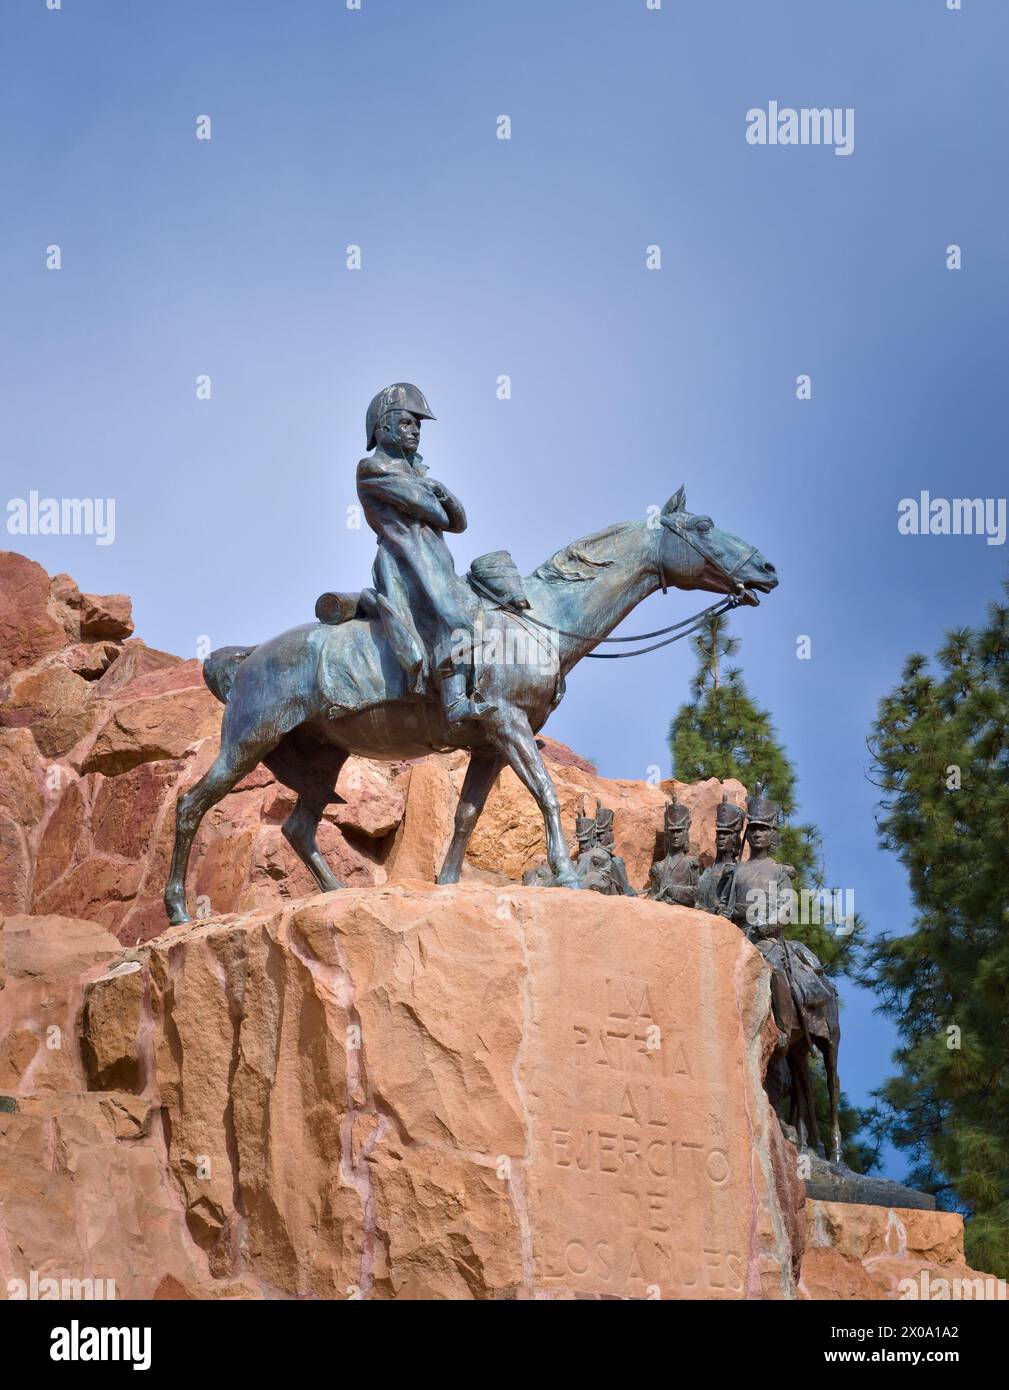 Monument to General José de San Martín atop the Cerro de La Gloria, in Mendoza, Argentina. Stock Photo